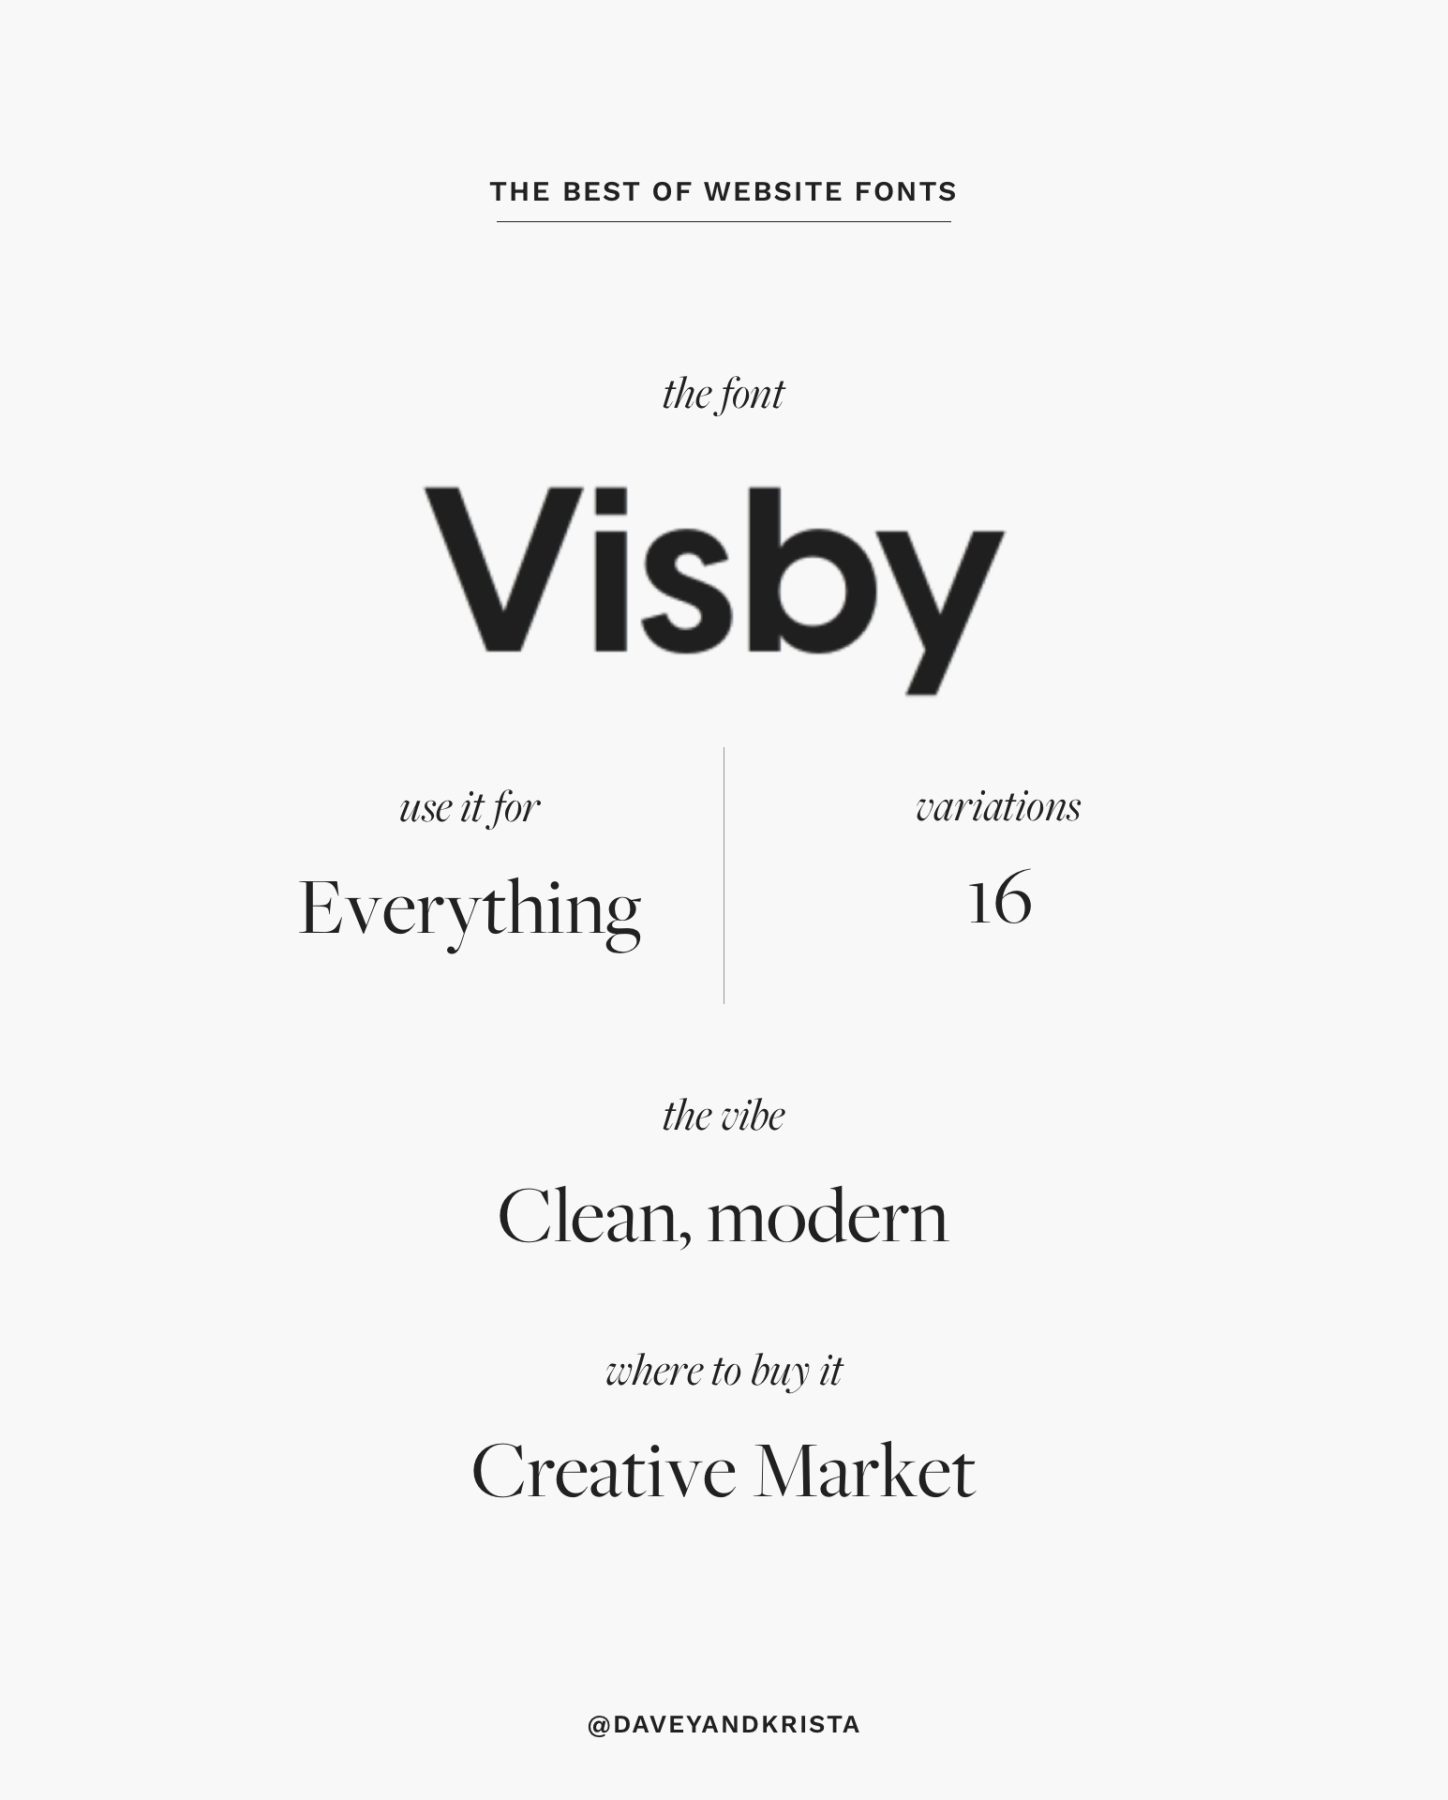 Sans serif font for websites - Visby | The Best Fonts for Websites